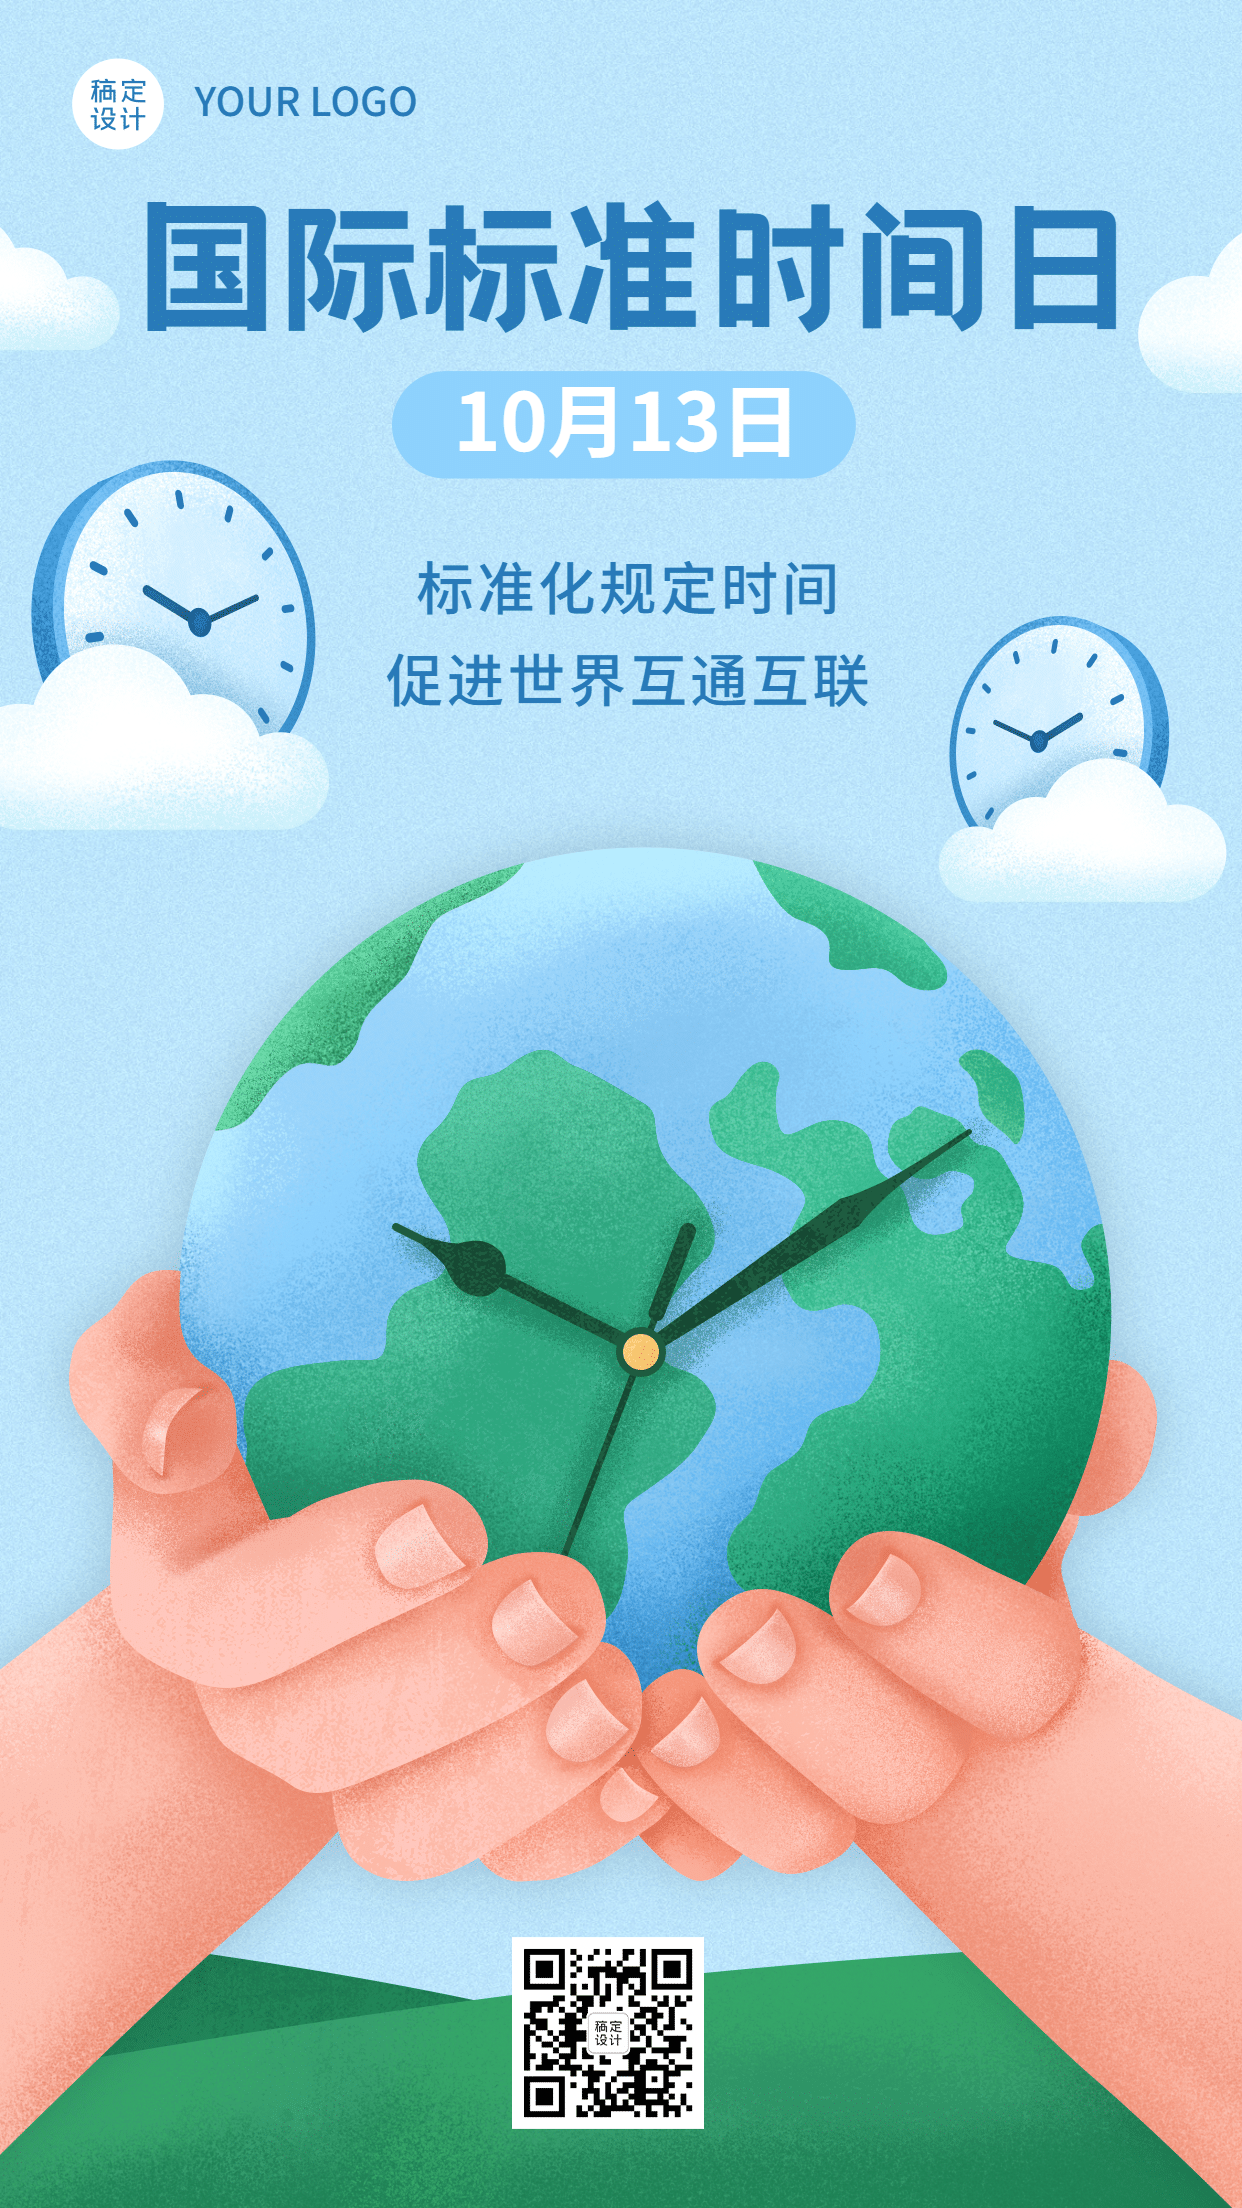 国际标准时间日准确计时宣传手绘海报预览效果